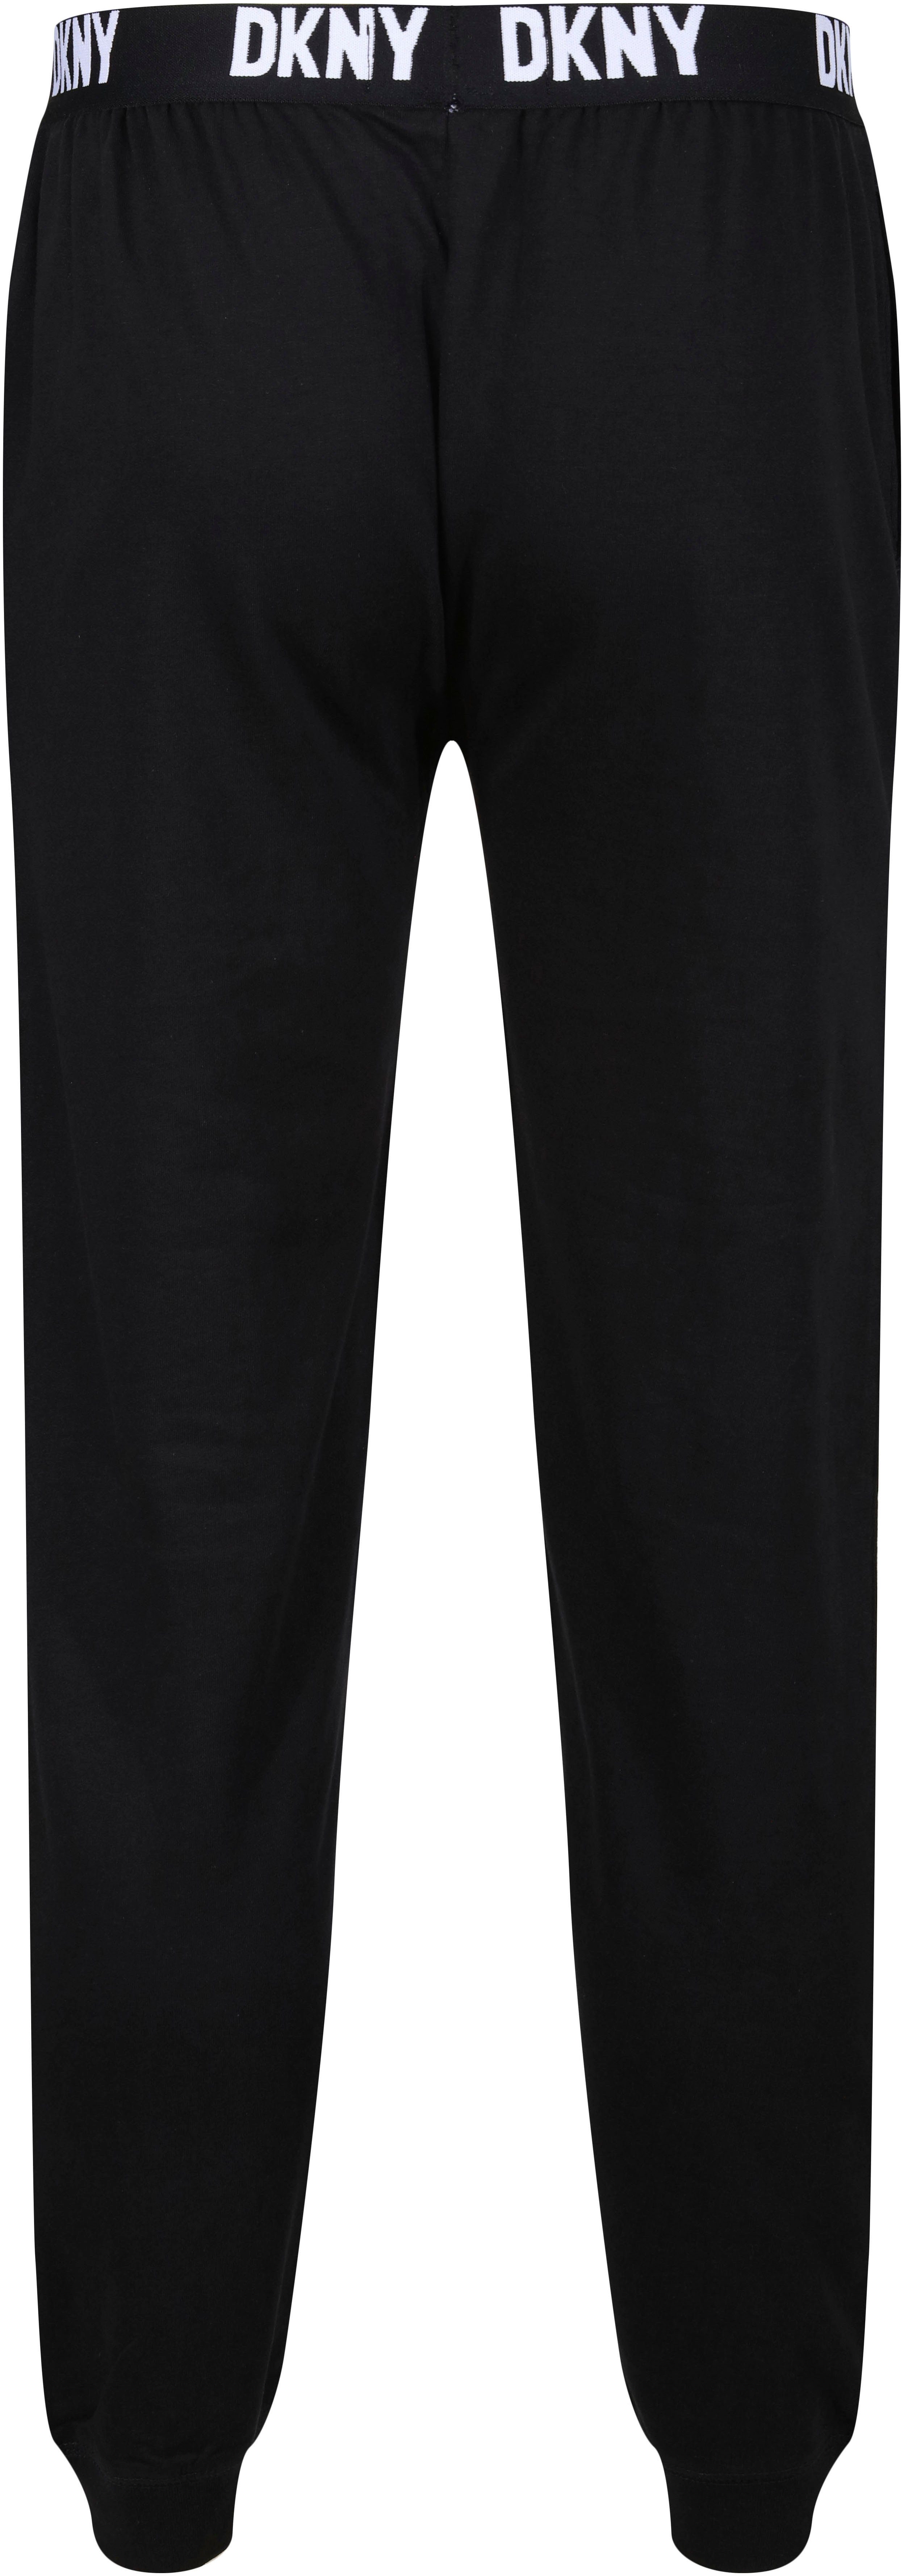 Loungepants elastischem Logo-Bündchen black mit DKNY